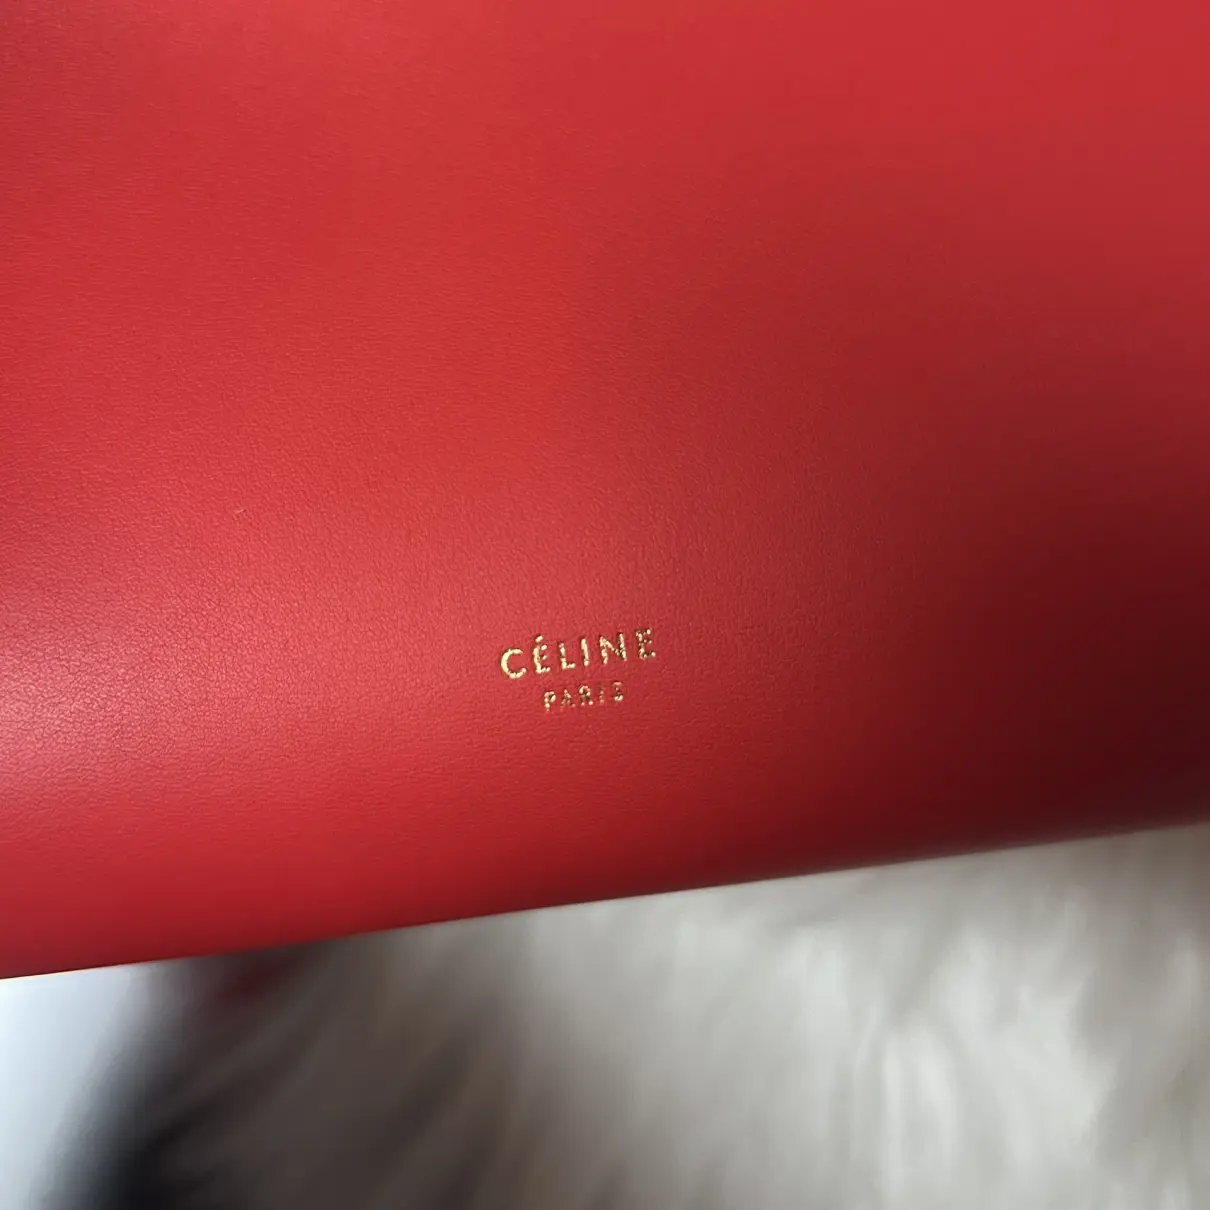 Buy Celine Tie leather handbag online